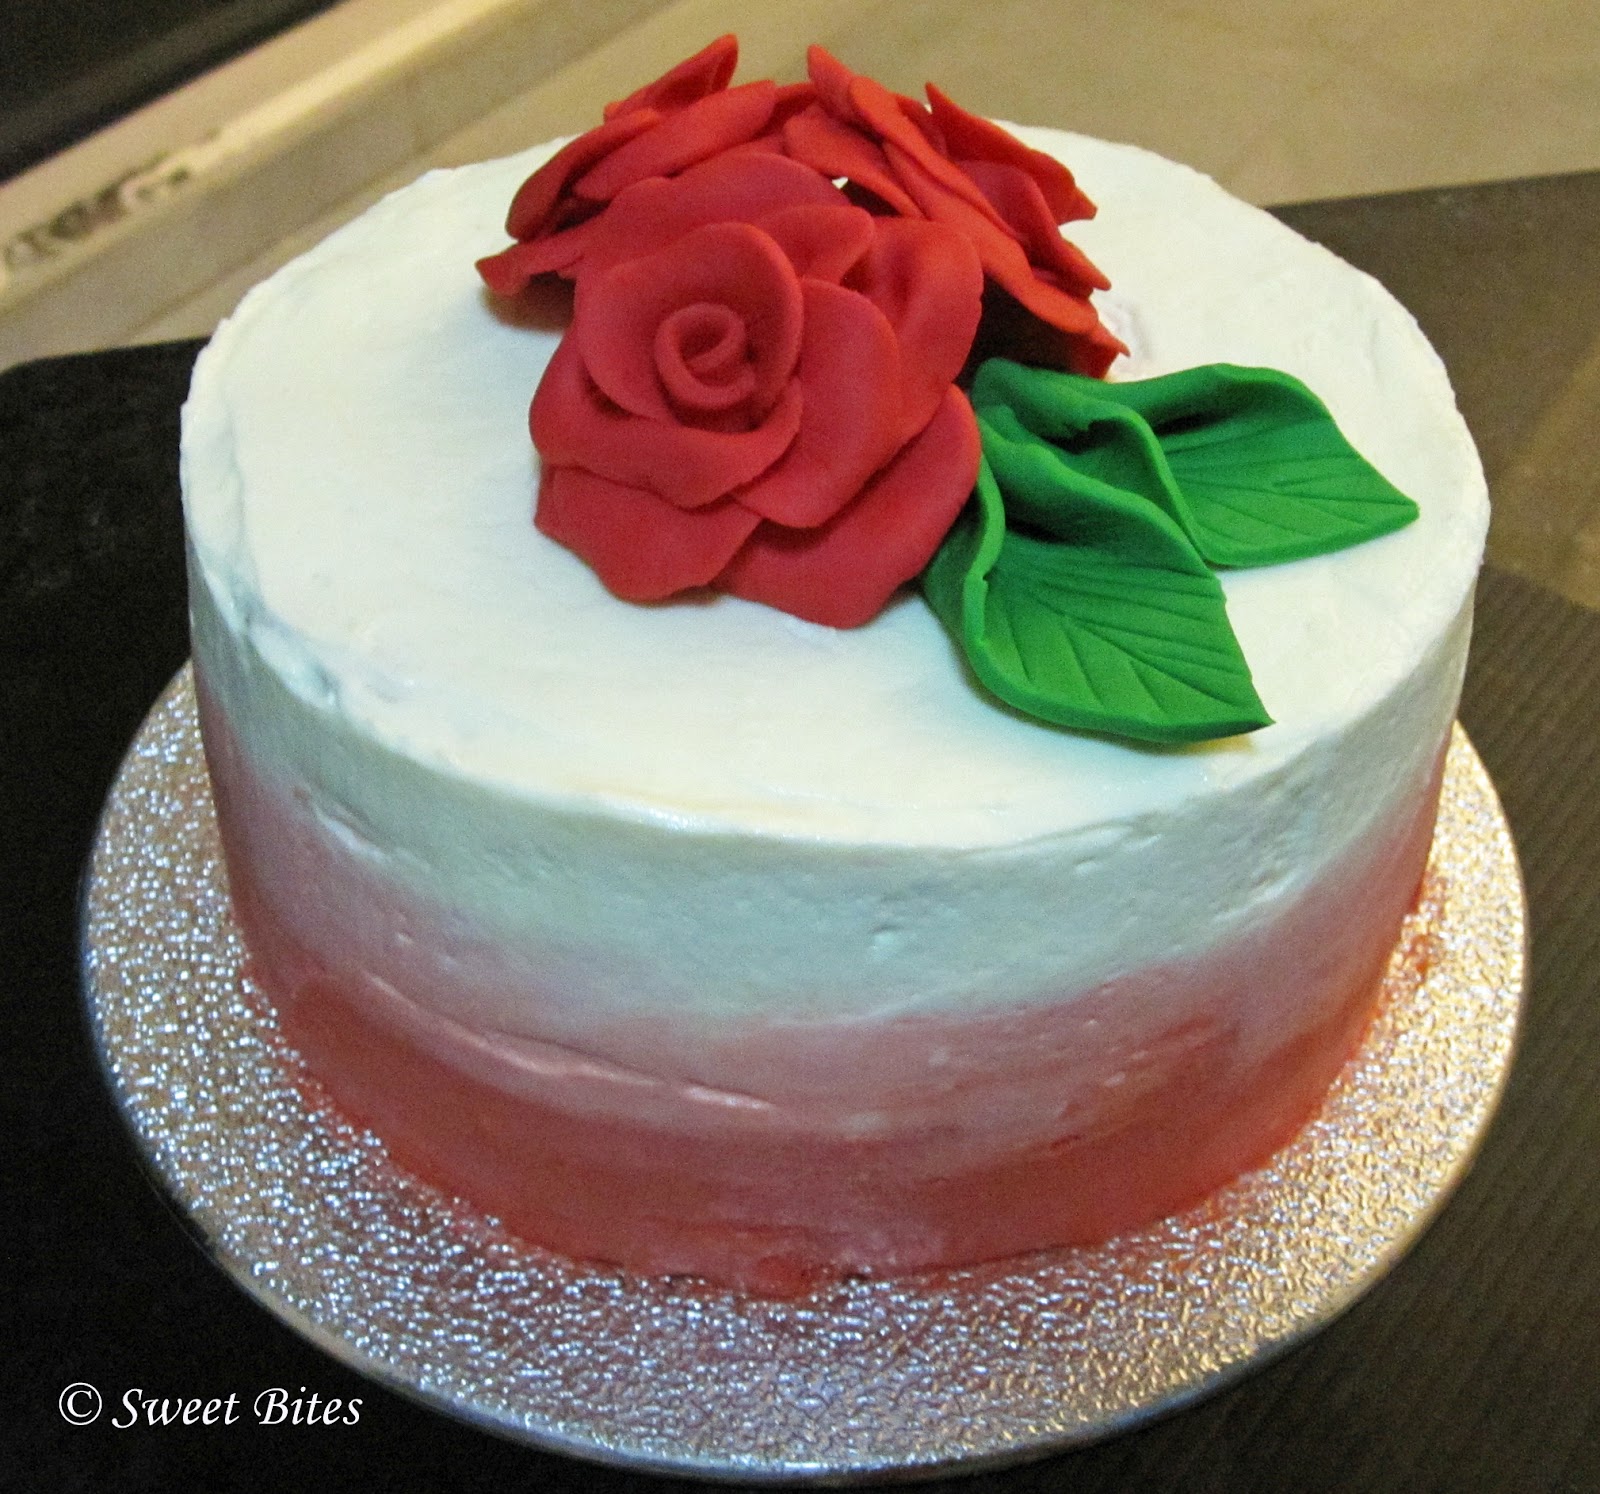 Sweet Bites Red Velvet Cake with Fondant Rose